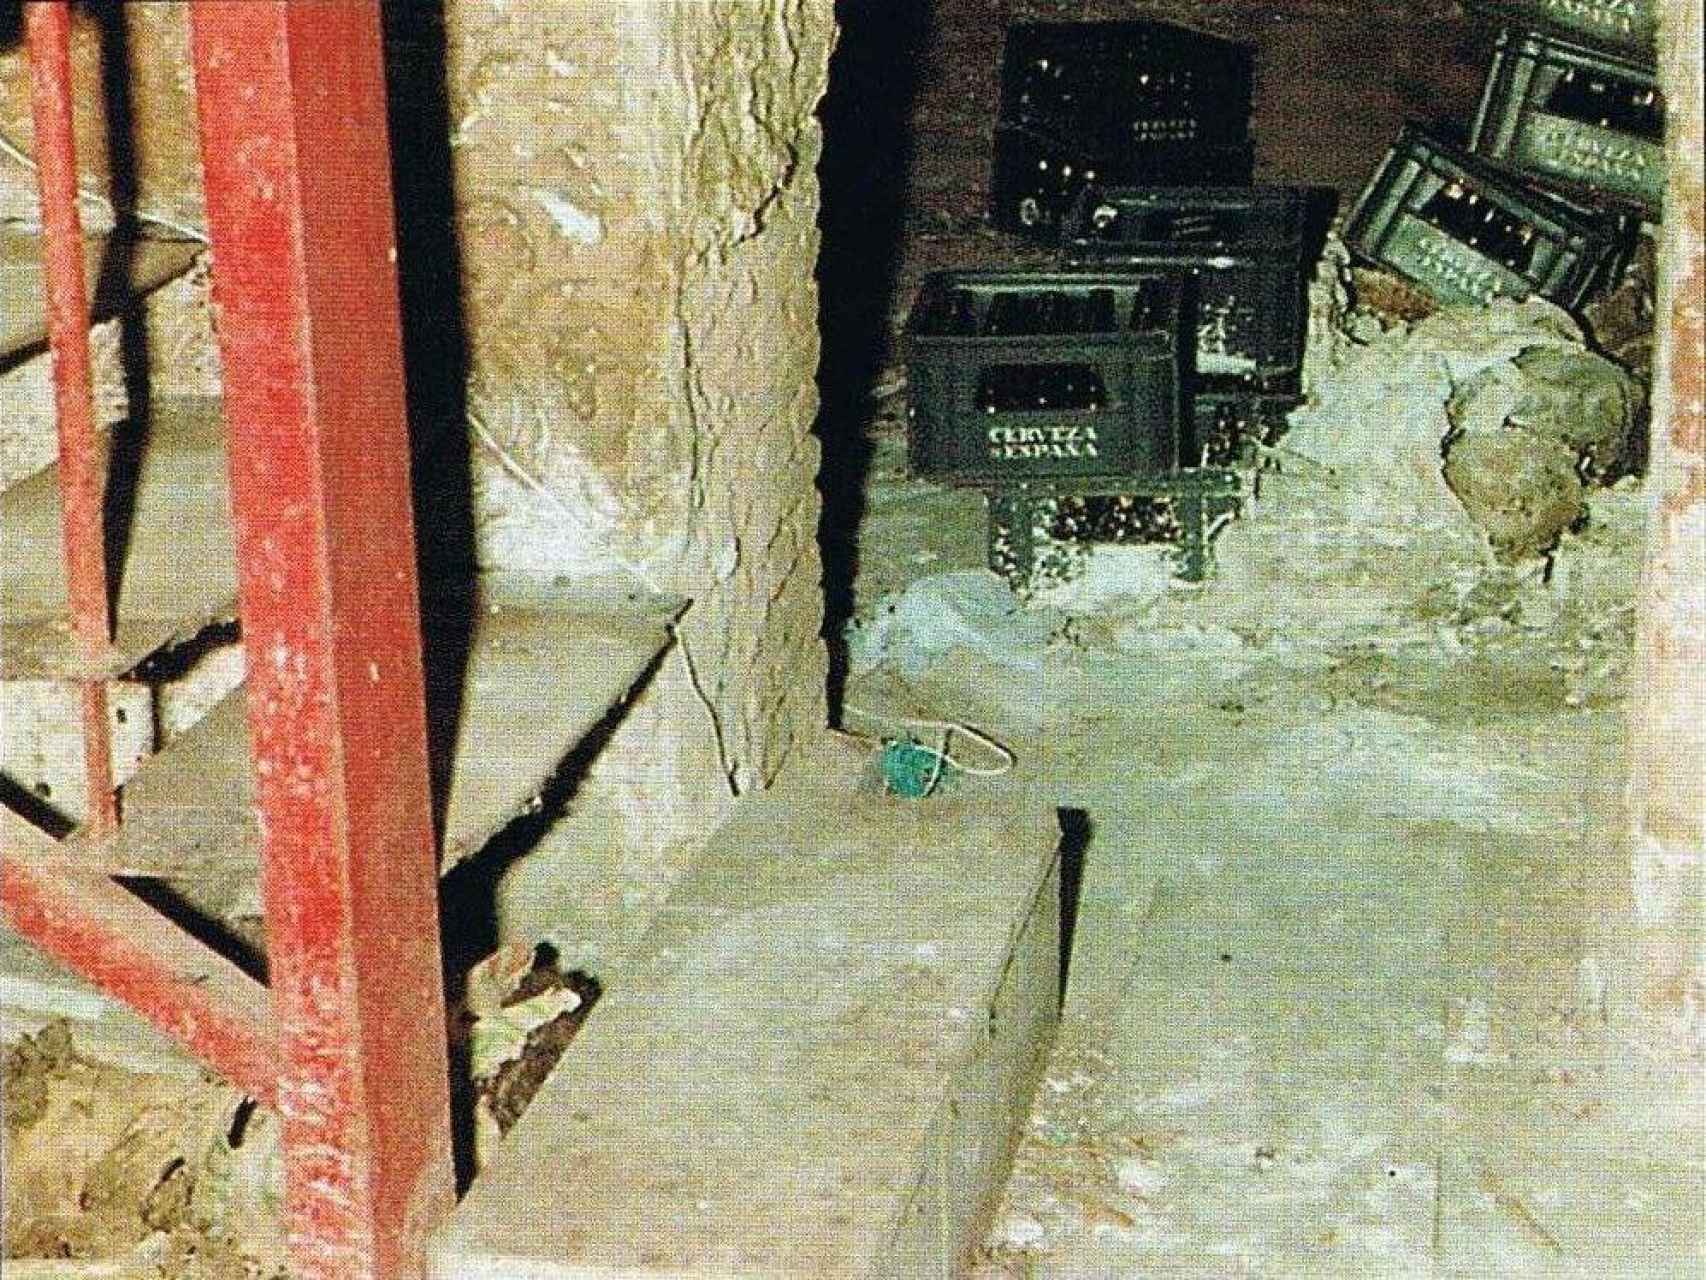 Bajo esta pequeña escalera creó un nicho para ocultar los cadáveres.